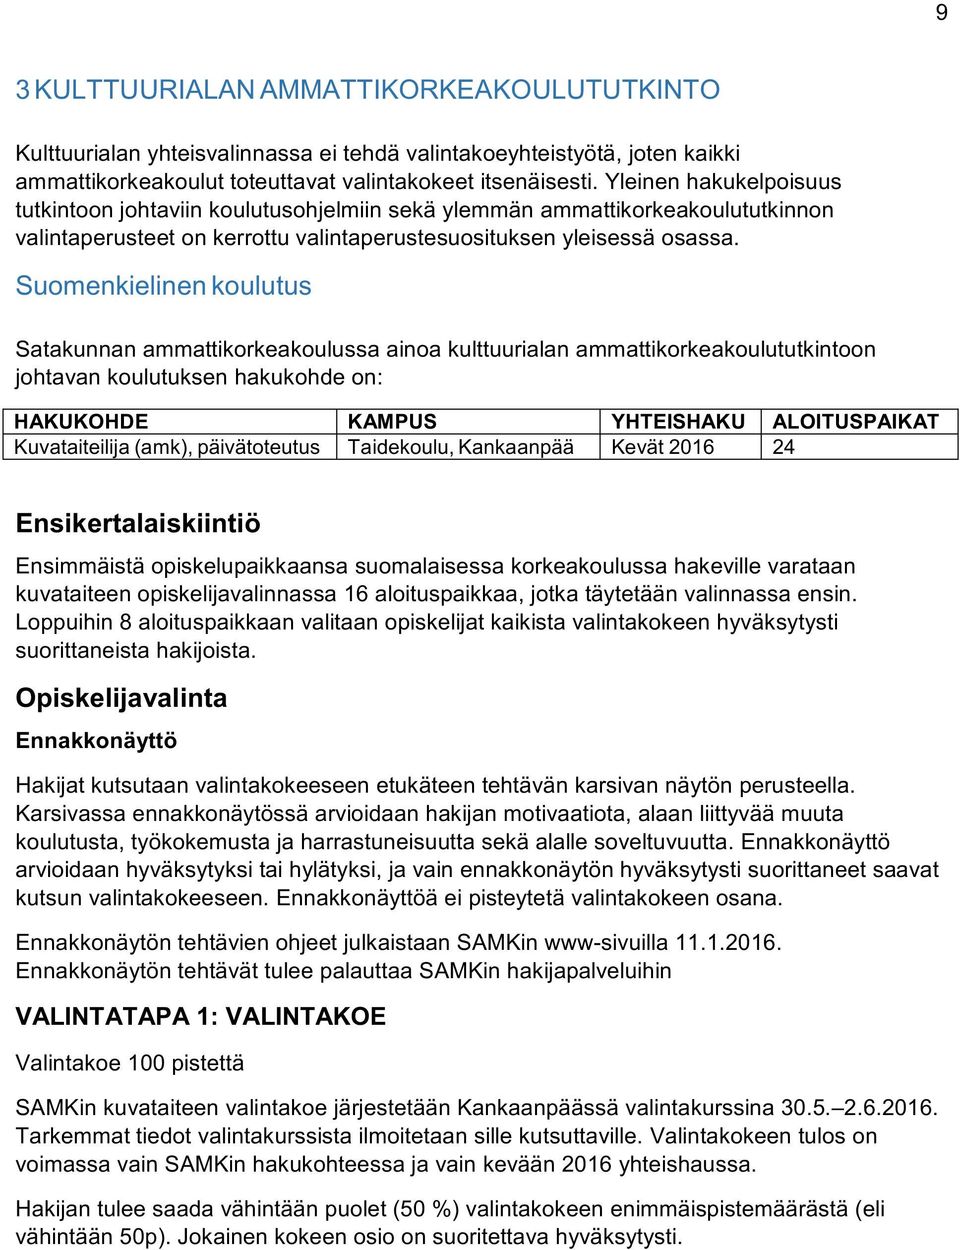 Suomenkielinenkoulutus Satakunnanammattikorkeakoulussaainoakulttuurialanammattikorkeakoulututkintoon johtavankoulutuksenhakukohdeon: HAKUKOHDE KAMPUS YHTEISHAKU ALOITUSPAIKAT